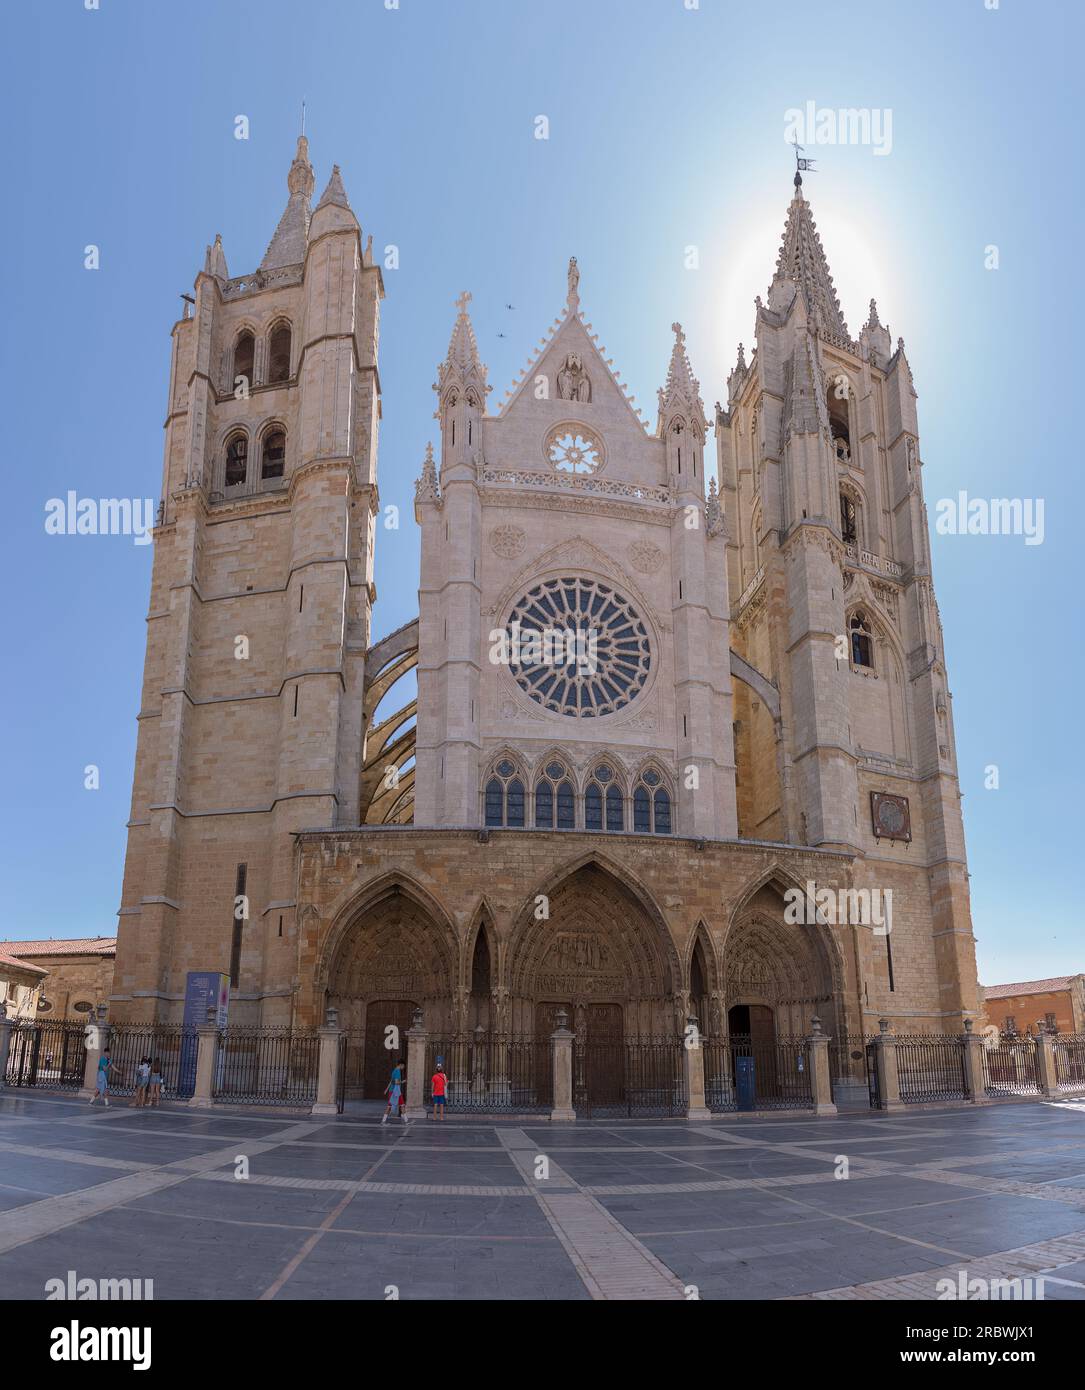 León Spagna - 07 04 2021: Vista principale della cattedrale di Santa María de Regla de León, iconica facciata gotica e romanica, situata in Plaza de Re Foto Stock